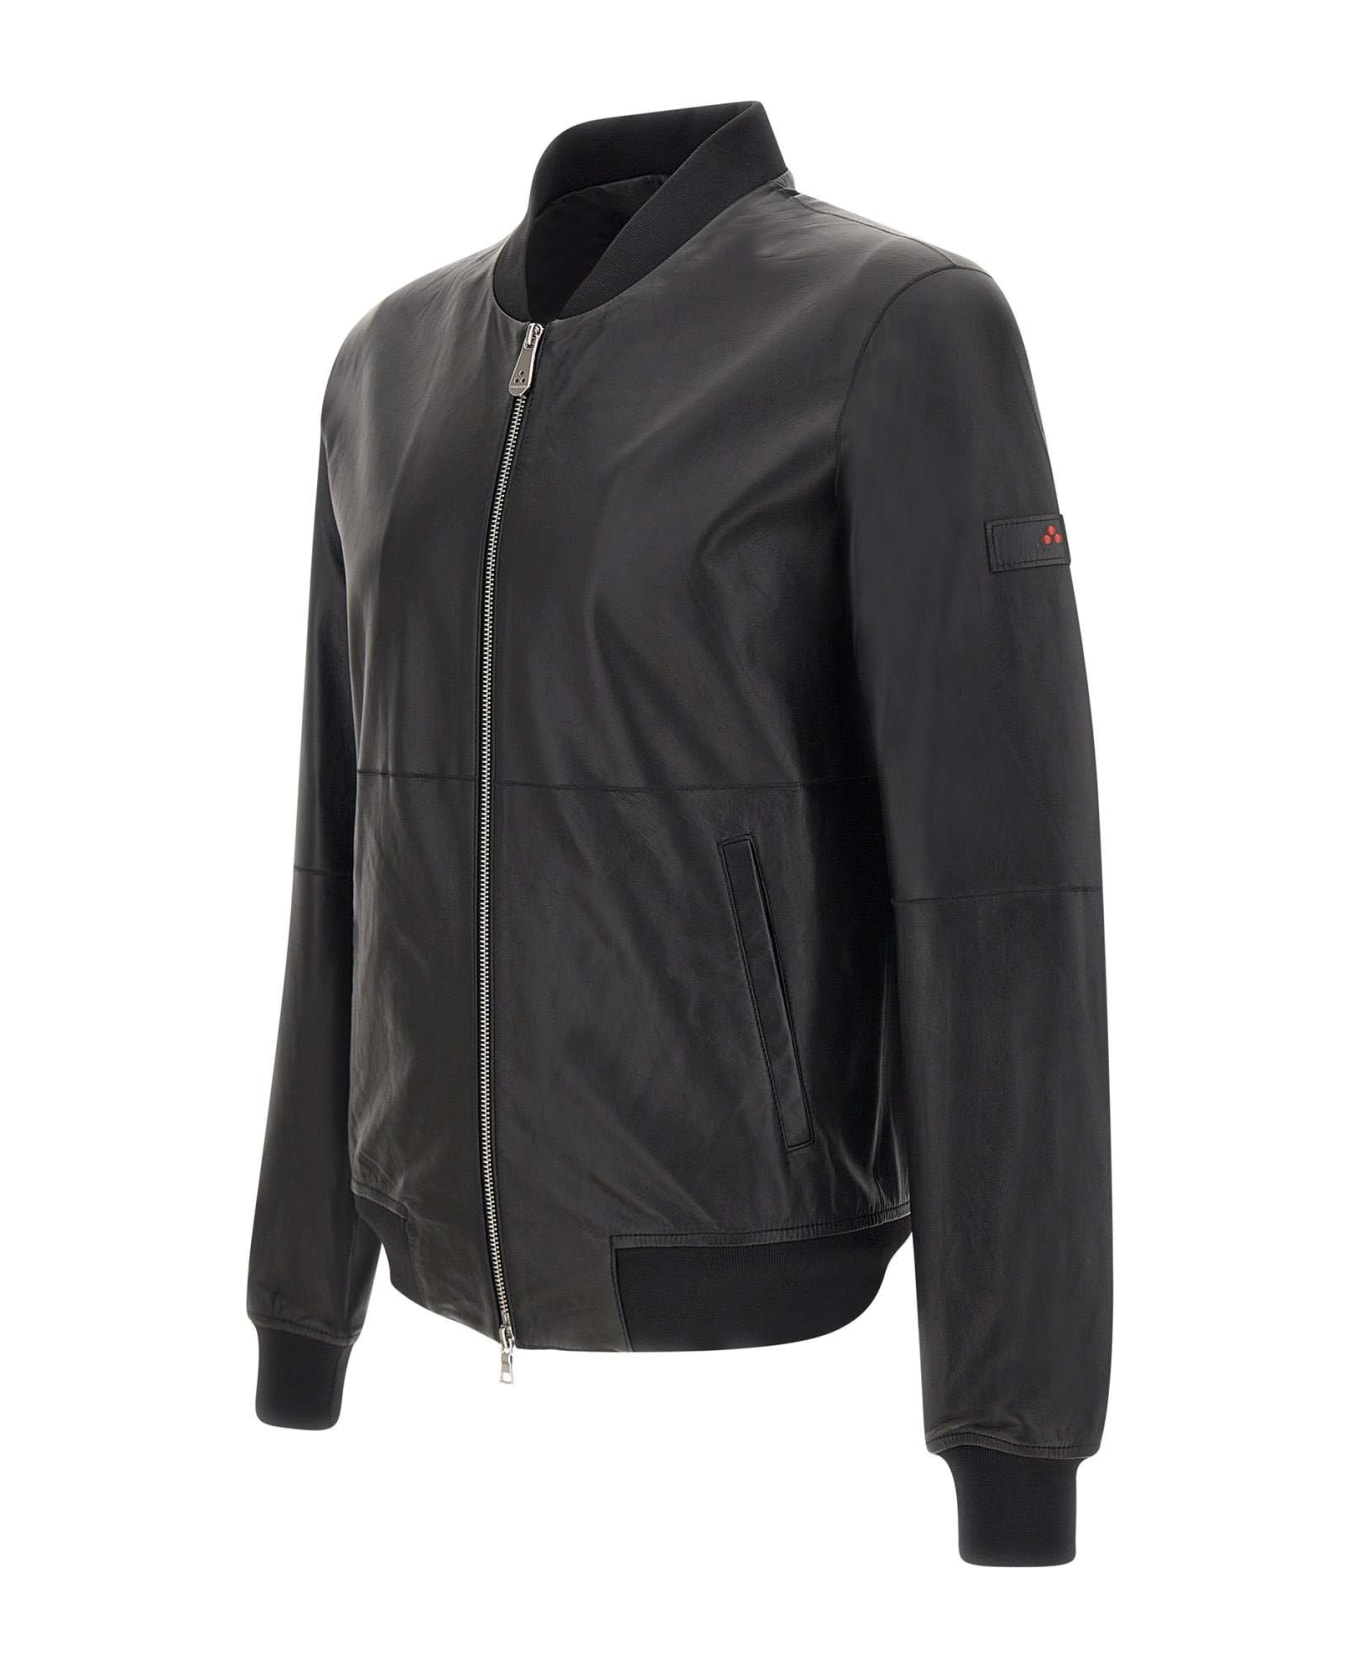 Peuterey 'fans Leather Acc' Jacket - Black